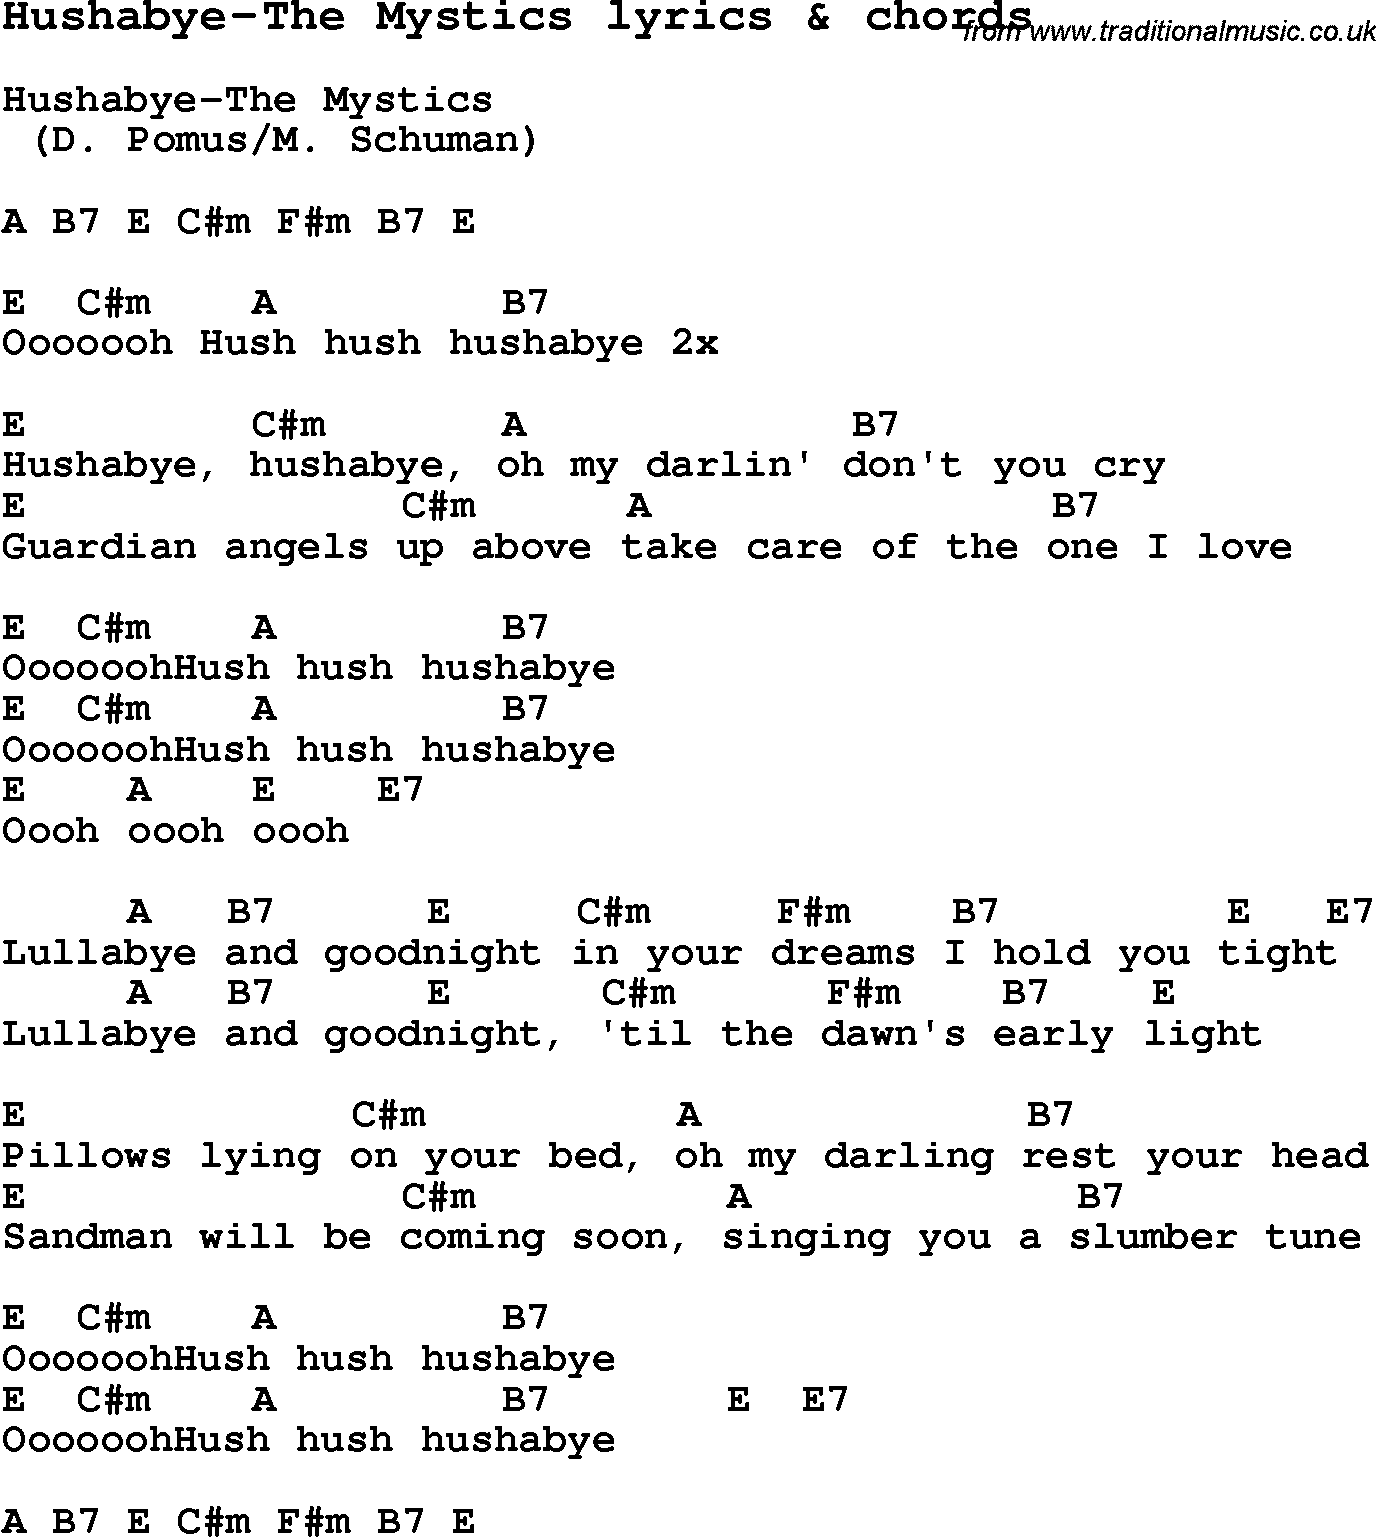 Love Song Lyrics for: Hushabye-The Mystics with chords for Ukulele, Guitar Banjo etc.